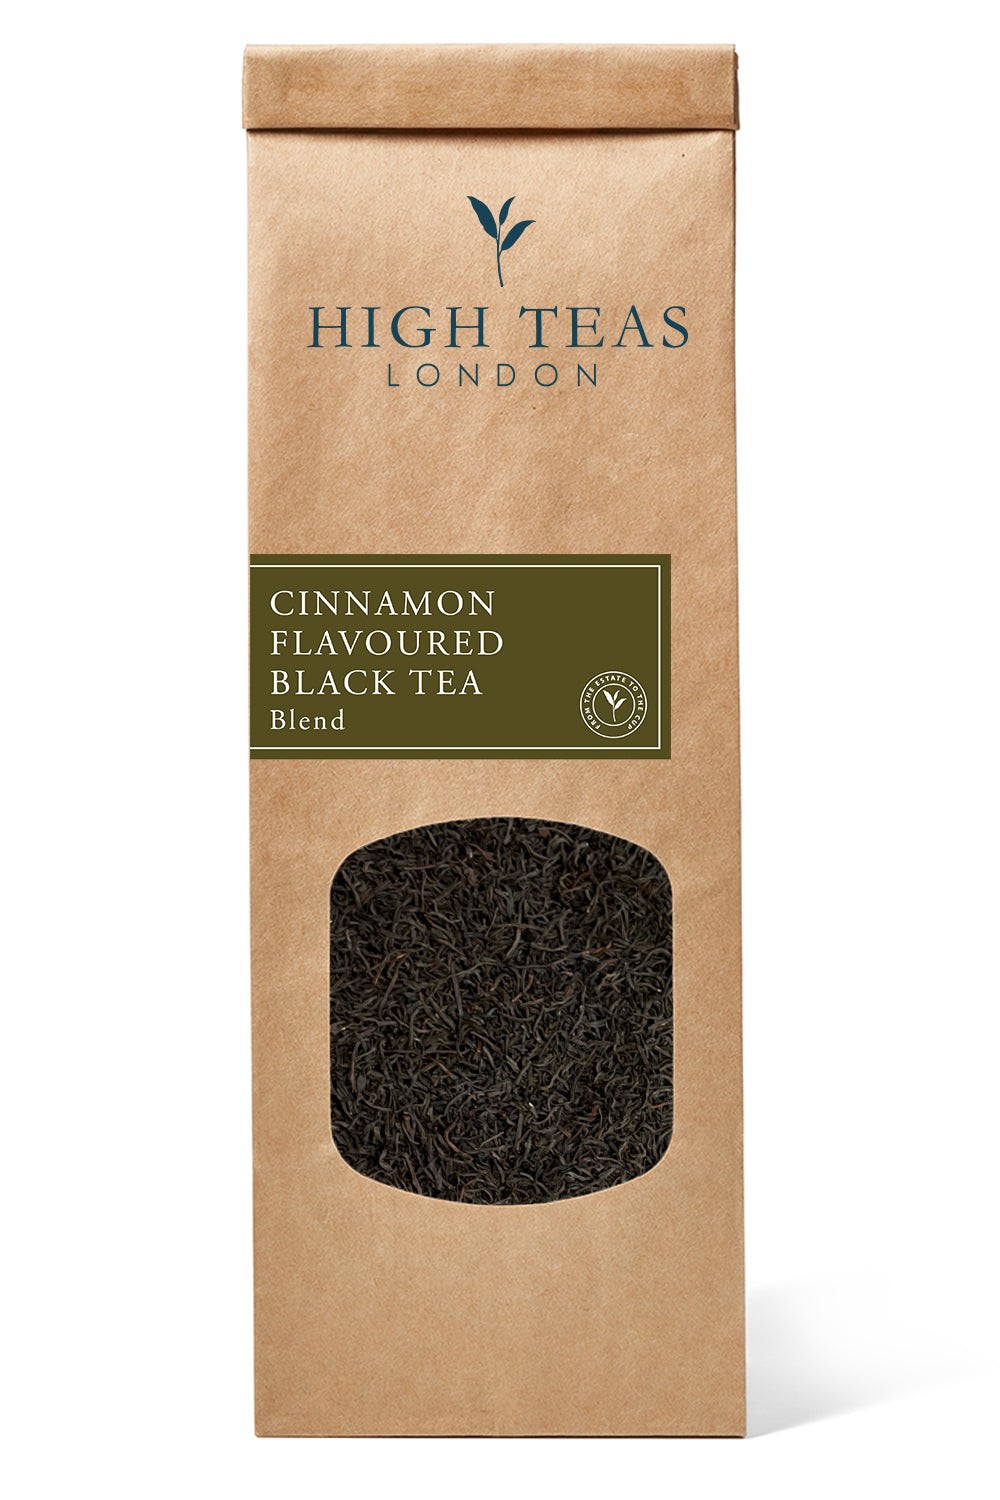 Cinnamon Flavoured Black Tea-50g-Loose Leaf Tea-High Teas